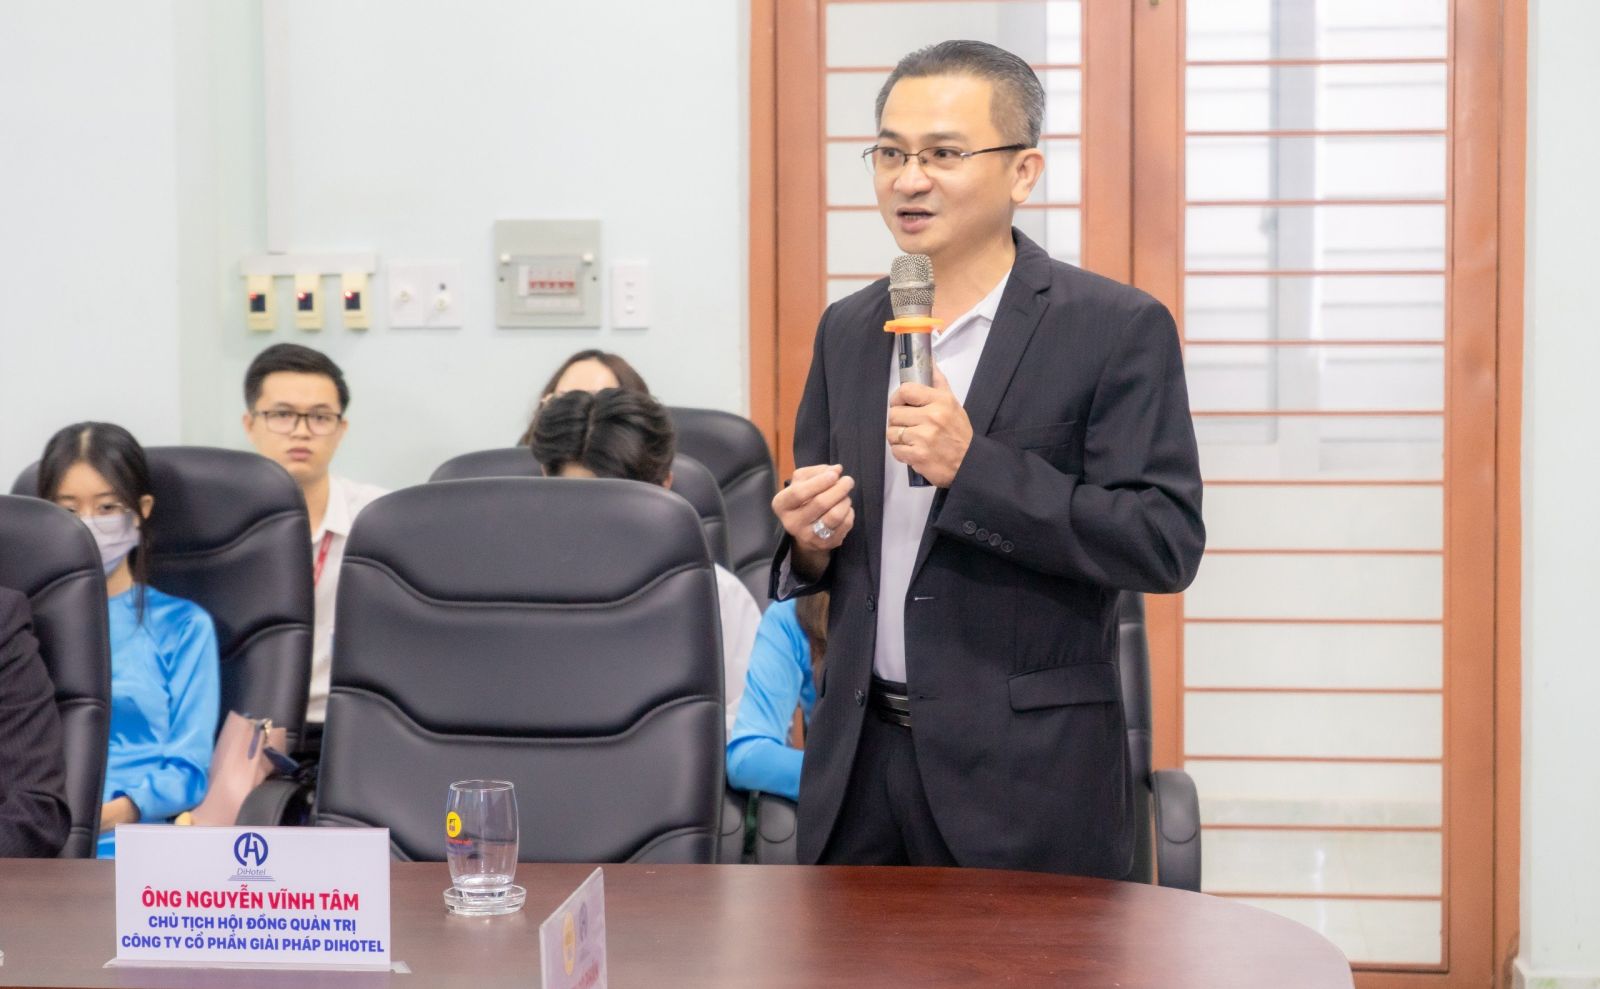 Ông Nguyễn Vĩnh Tâm – Chủ tịch  DiHotel chia sẻ về giá trị, tiện ích từ việc áp dụng hệ thống phần mềm phục vụ quản lý khách sạn